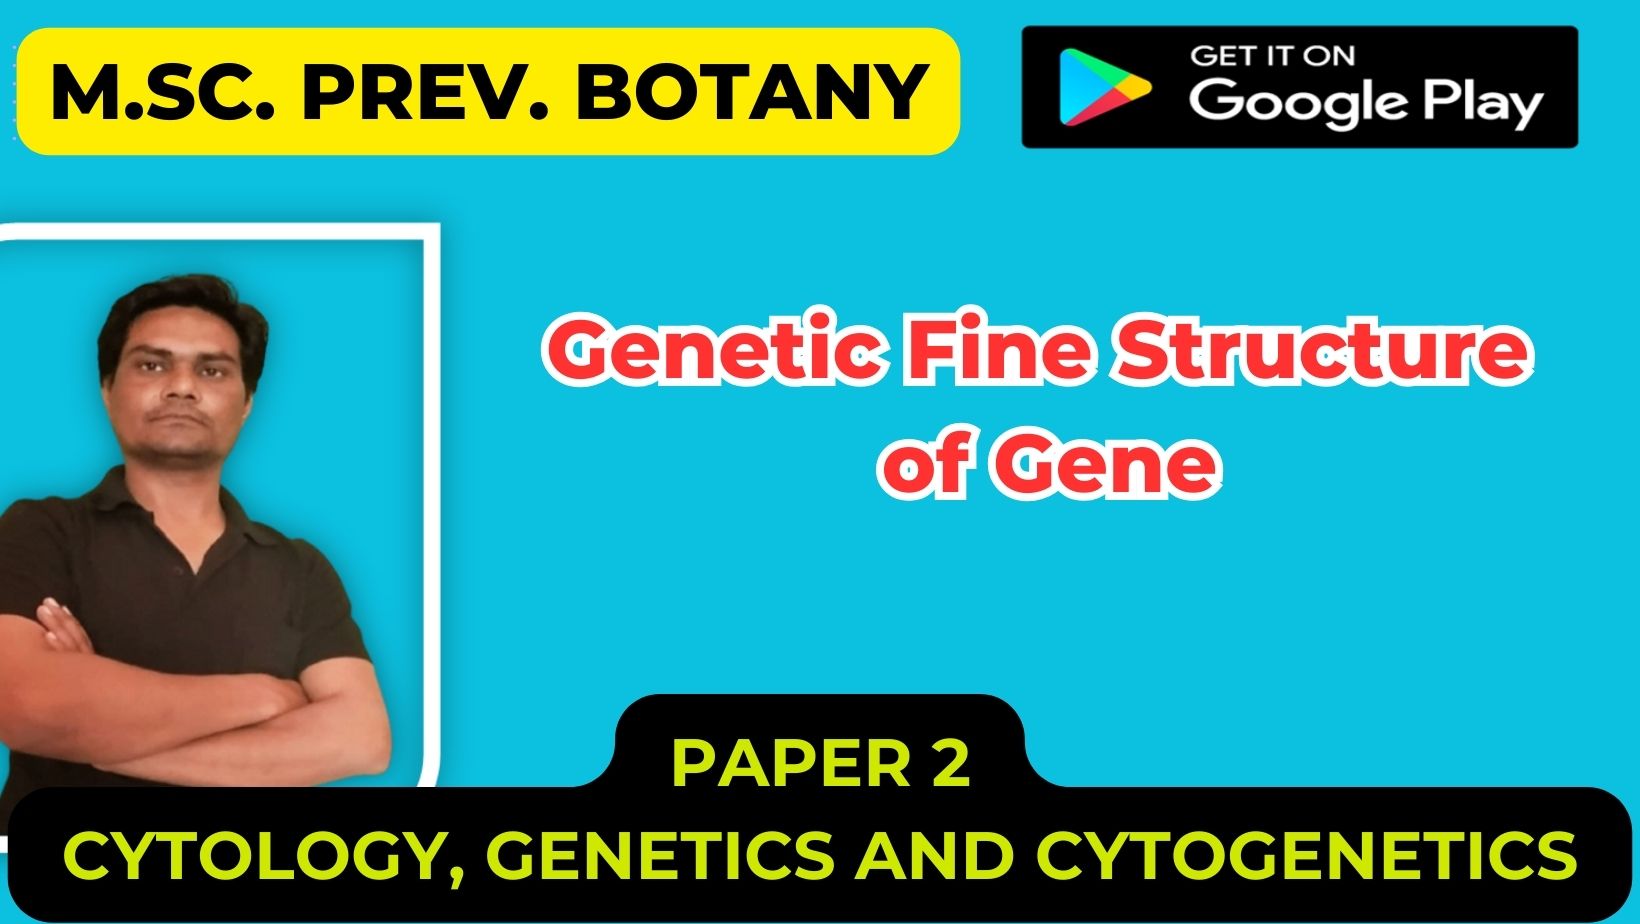 Genetic Fine Structure of Gene